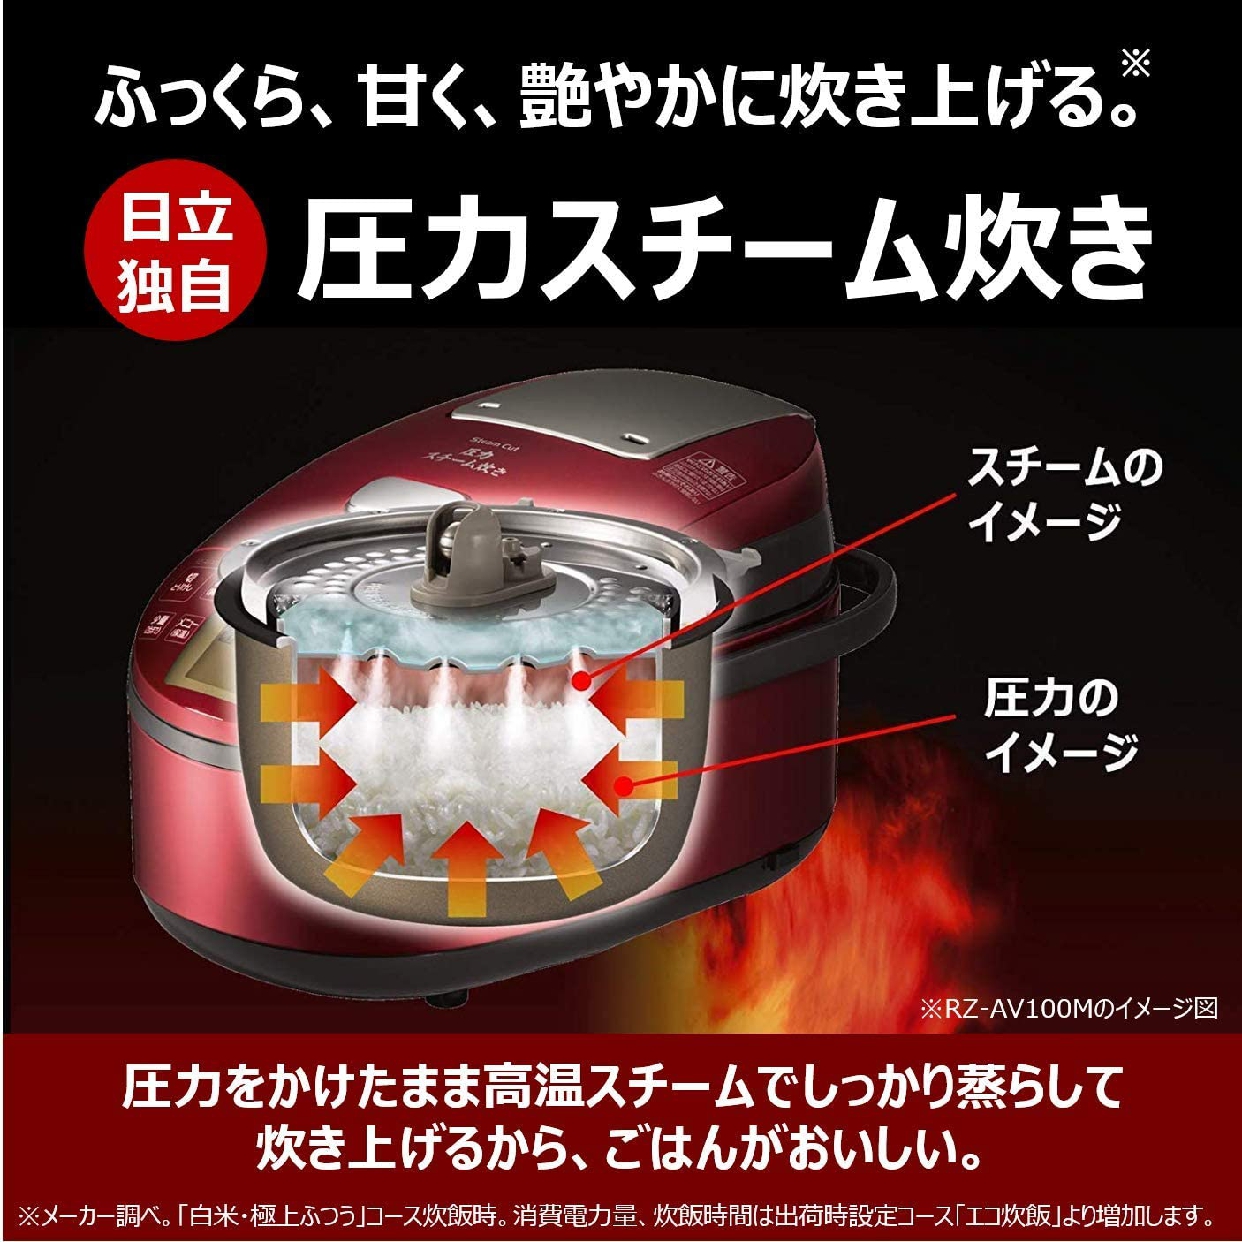 日立(HITACHI) IHジャー炊飯器 RZ-AV100M R メタリックレッドの商品画像3 